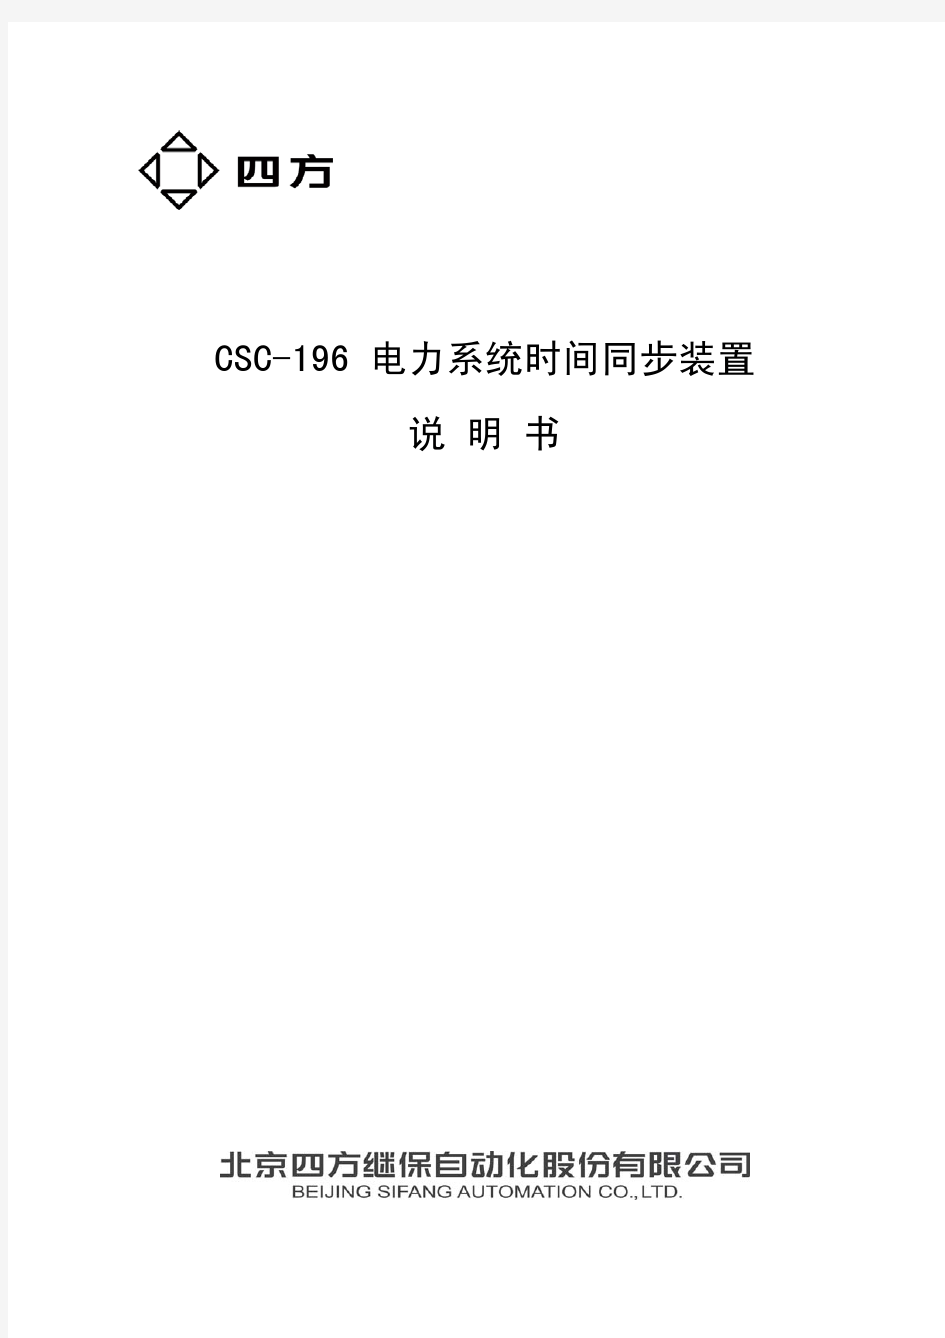 CSC-196电力系统时间同步装置说明书(0SF.459.057 )_V2.10